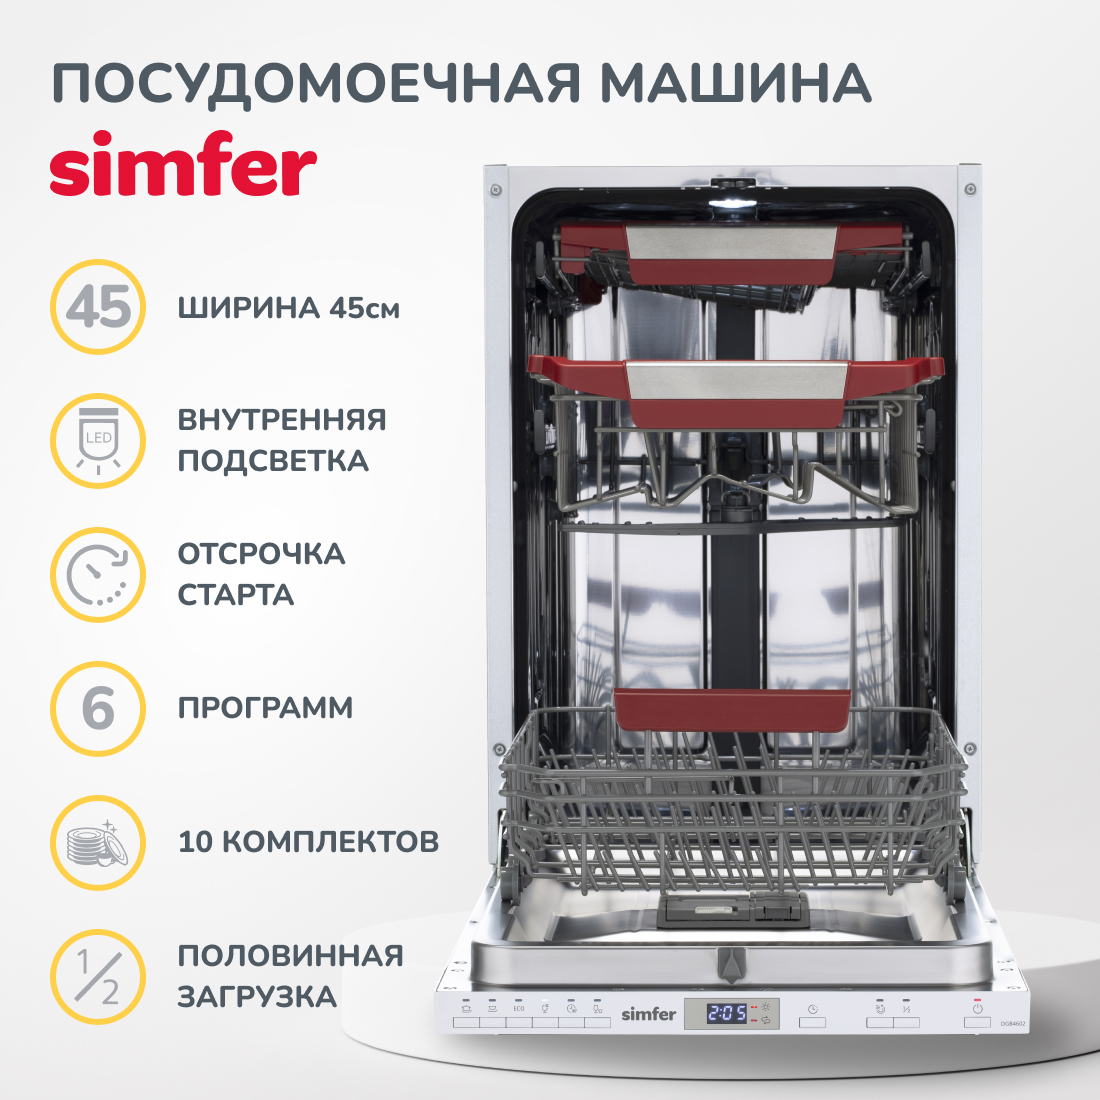 Встраиваемая посудомоечная машина Simfer DGB4602 (вместимость 10 комплектов, внутренняя подсветка, энергоэффективность А++), цвет серый Встраиваемая посудомоечная машина Simfer DGB4602 (вместимость 10 комплектов, внутренняя подсветка, э - фото 5